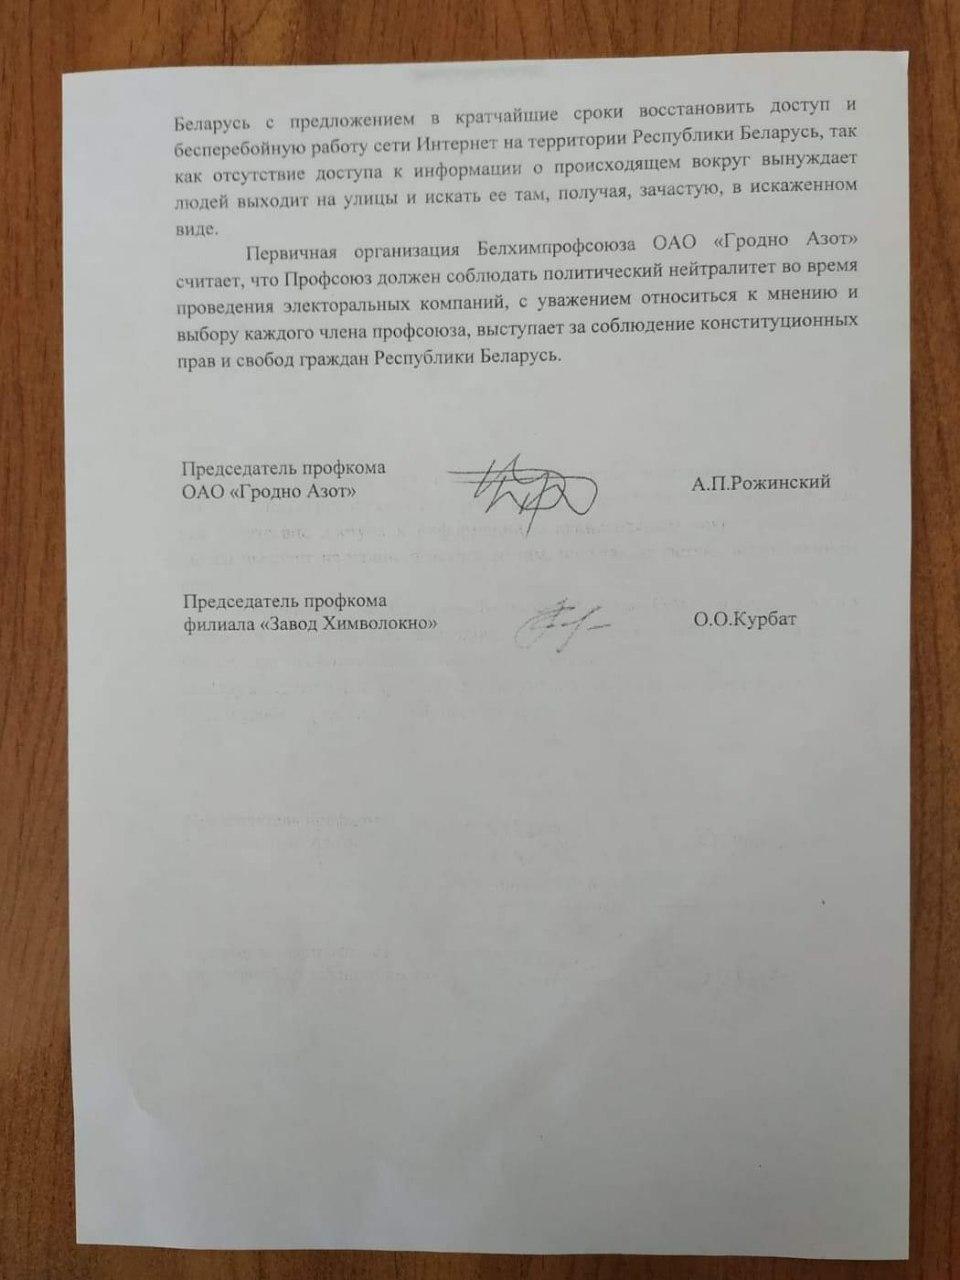 Официальный профсоюз "Гродно Азот" требует проверить результаты выборов